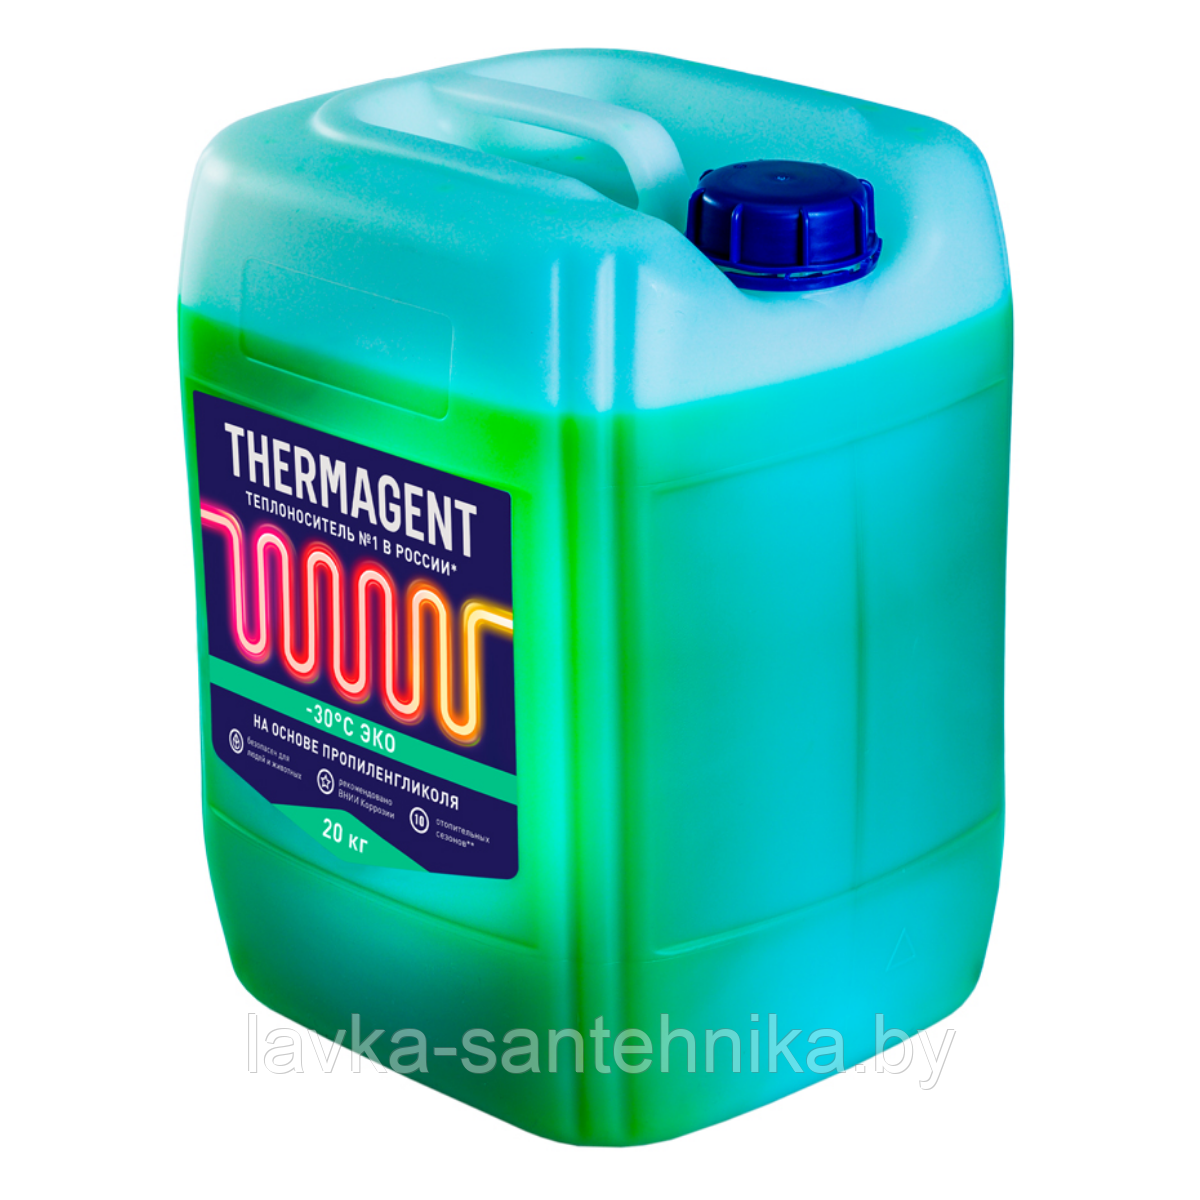 Теплоноситель Thermagent -30°C ЭКО, 20 кг (срок службы: 10 сезонов)